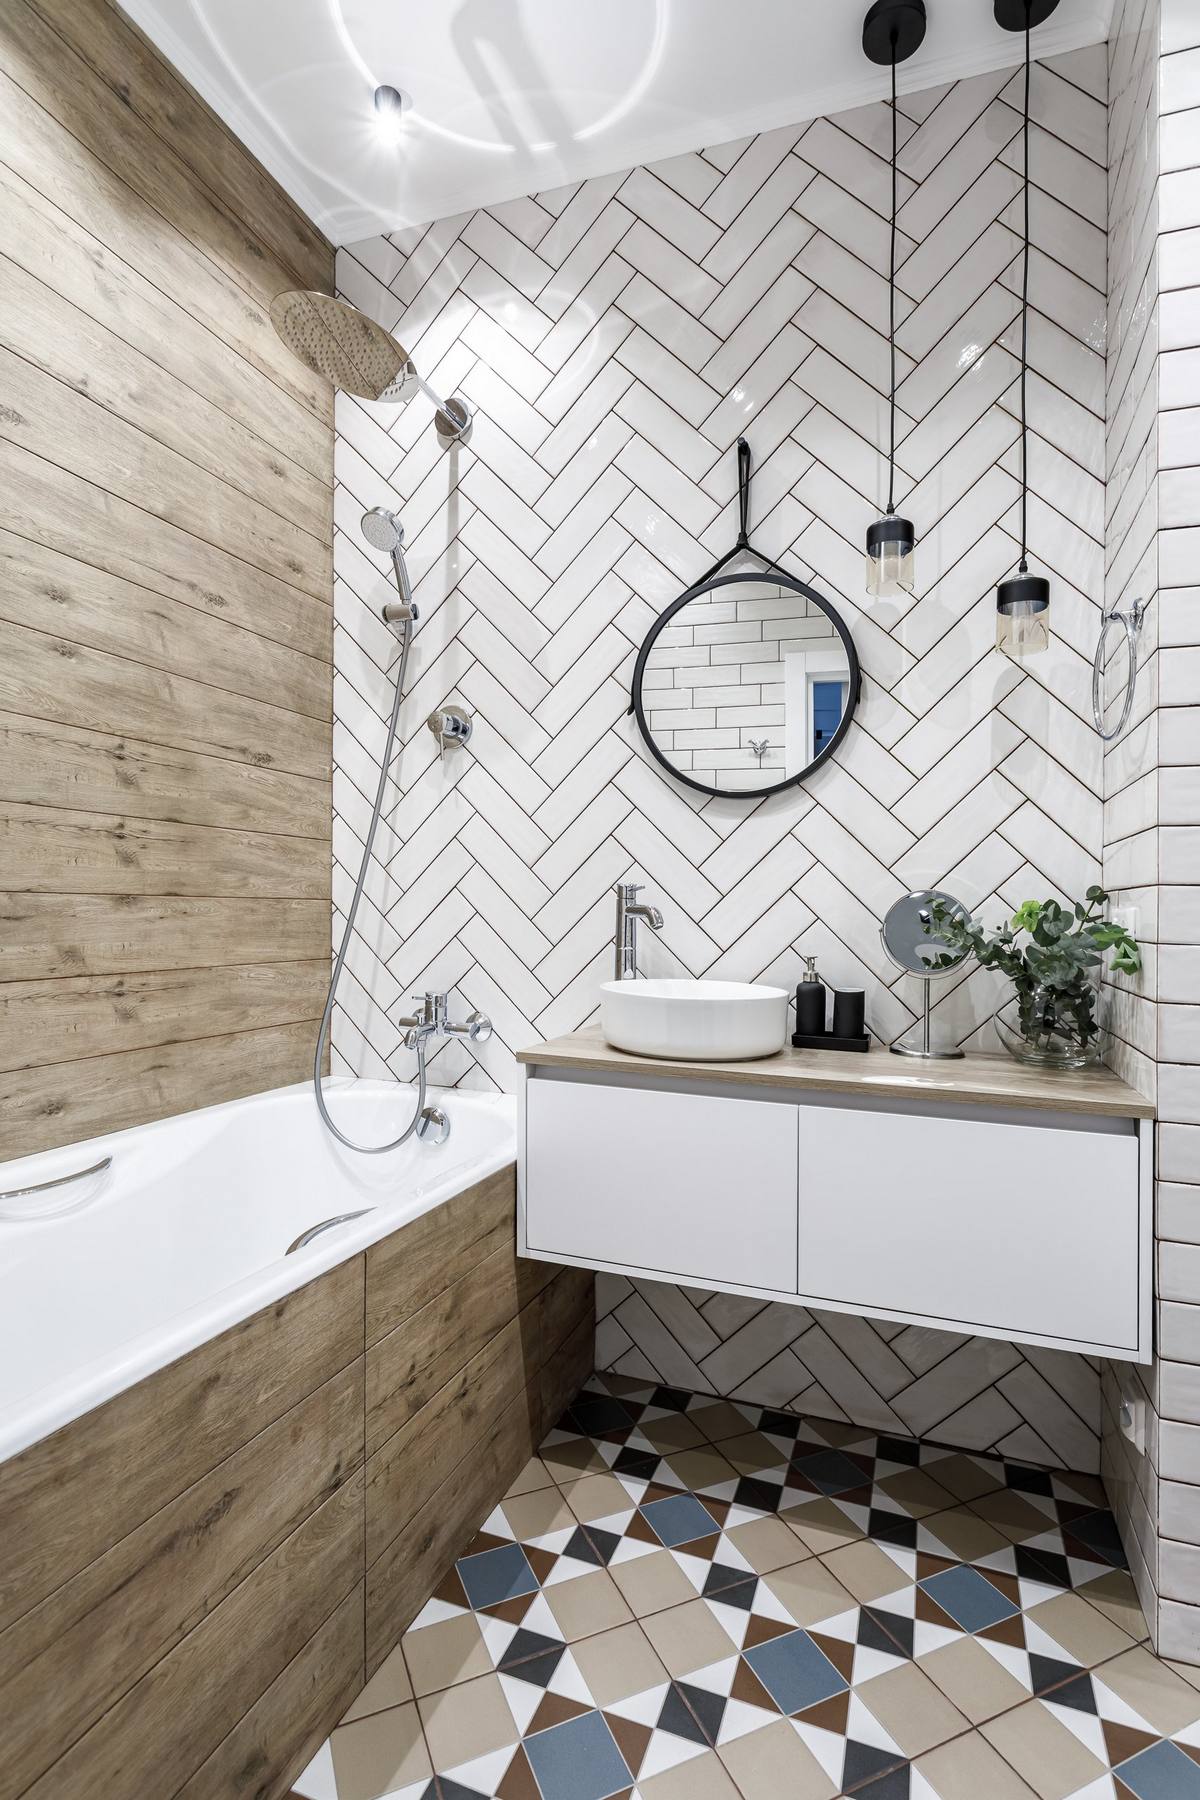 Phòng tắm nhỏ gọn với sàn nhà lát gạch tương tự lối vào nhà. Bức tường được chia thành 2 kiểu trang trí. Một bên ốp gỗ đã xử lý chống thấm, một bên ốp gạch màu trắng bóng. Tủ vanity gắn tường được lựa chọn giúp giải phóng diện tích mặt sàn.